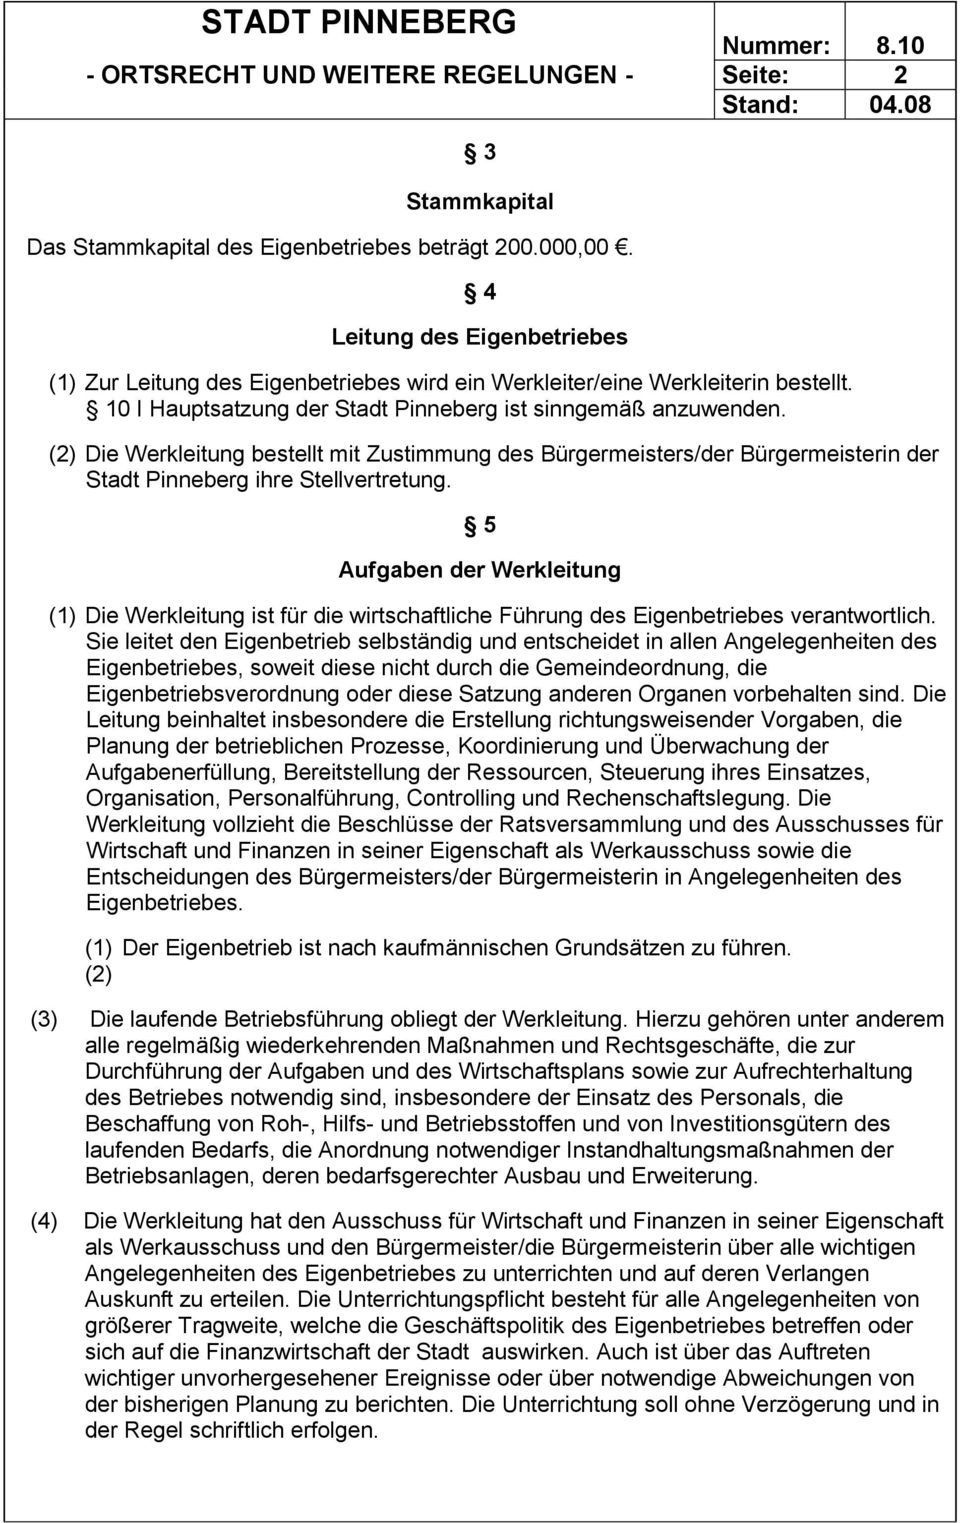 (2) Die Werkleitung bestellt mit Zustimmung des Bürgermeisters/der Bürgermeisterin der Stadt Pinneberg ihre Stellvertretung.